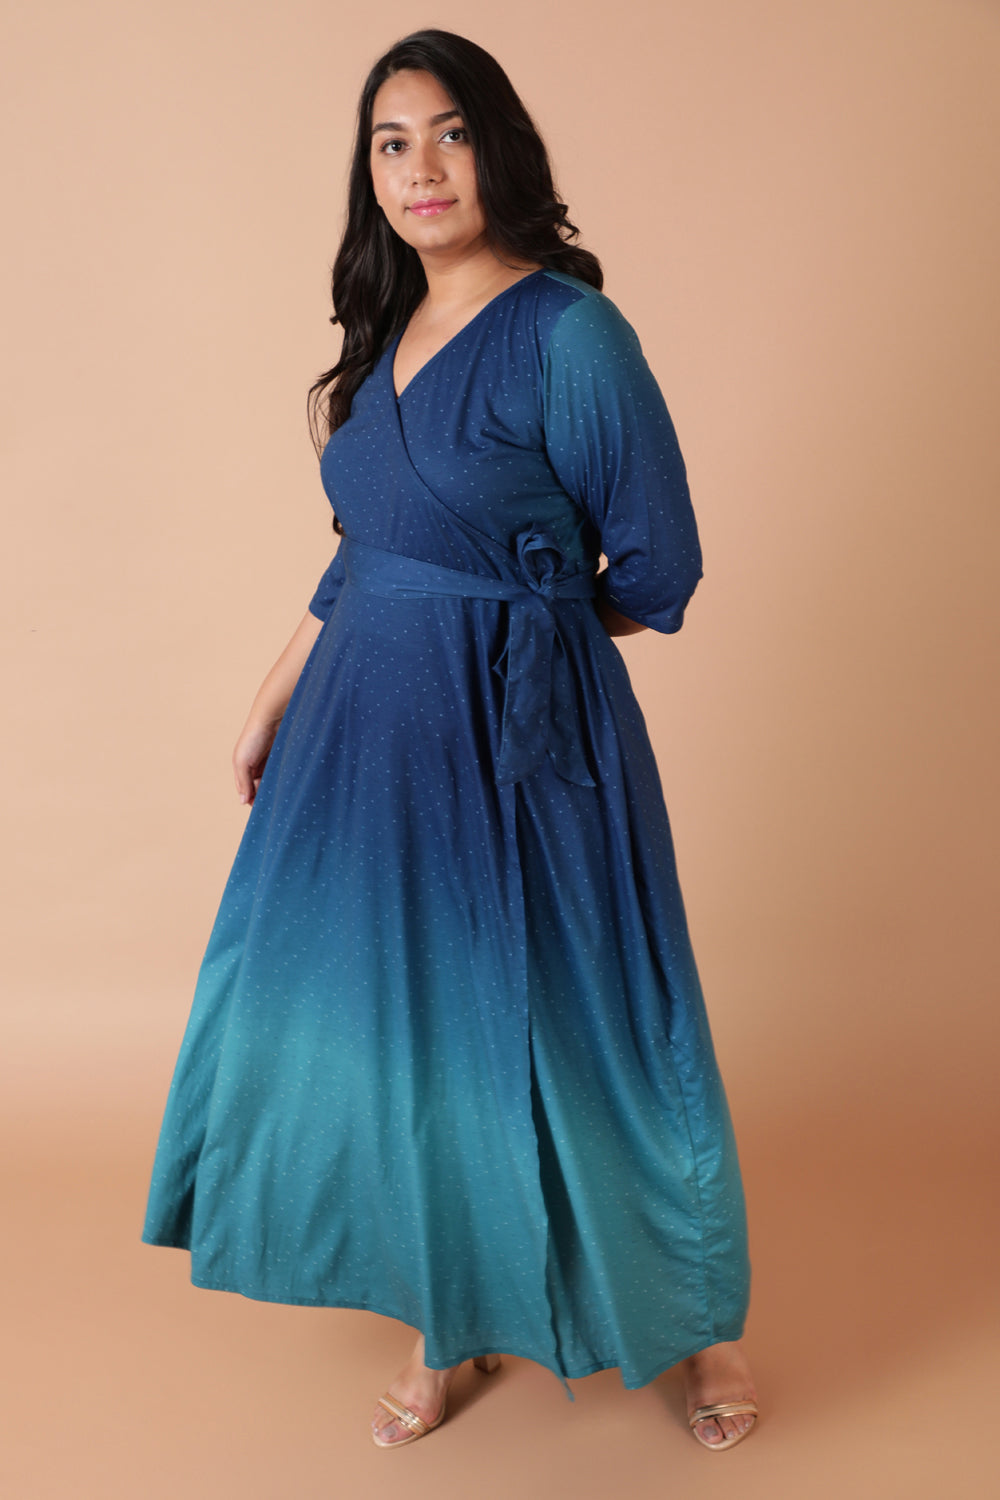 Blue Ombre True Wrap Maxi Dress